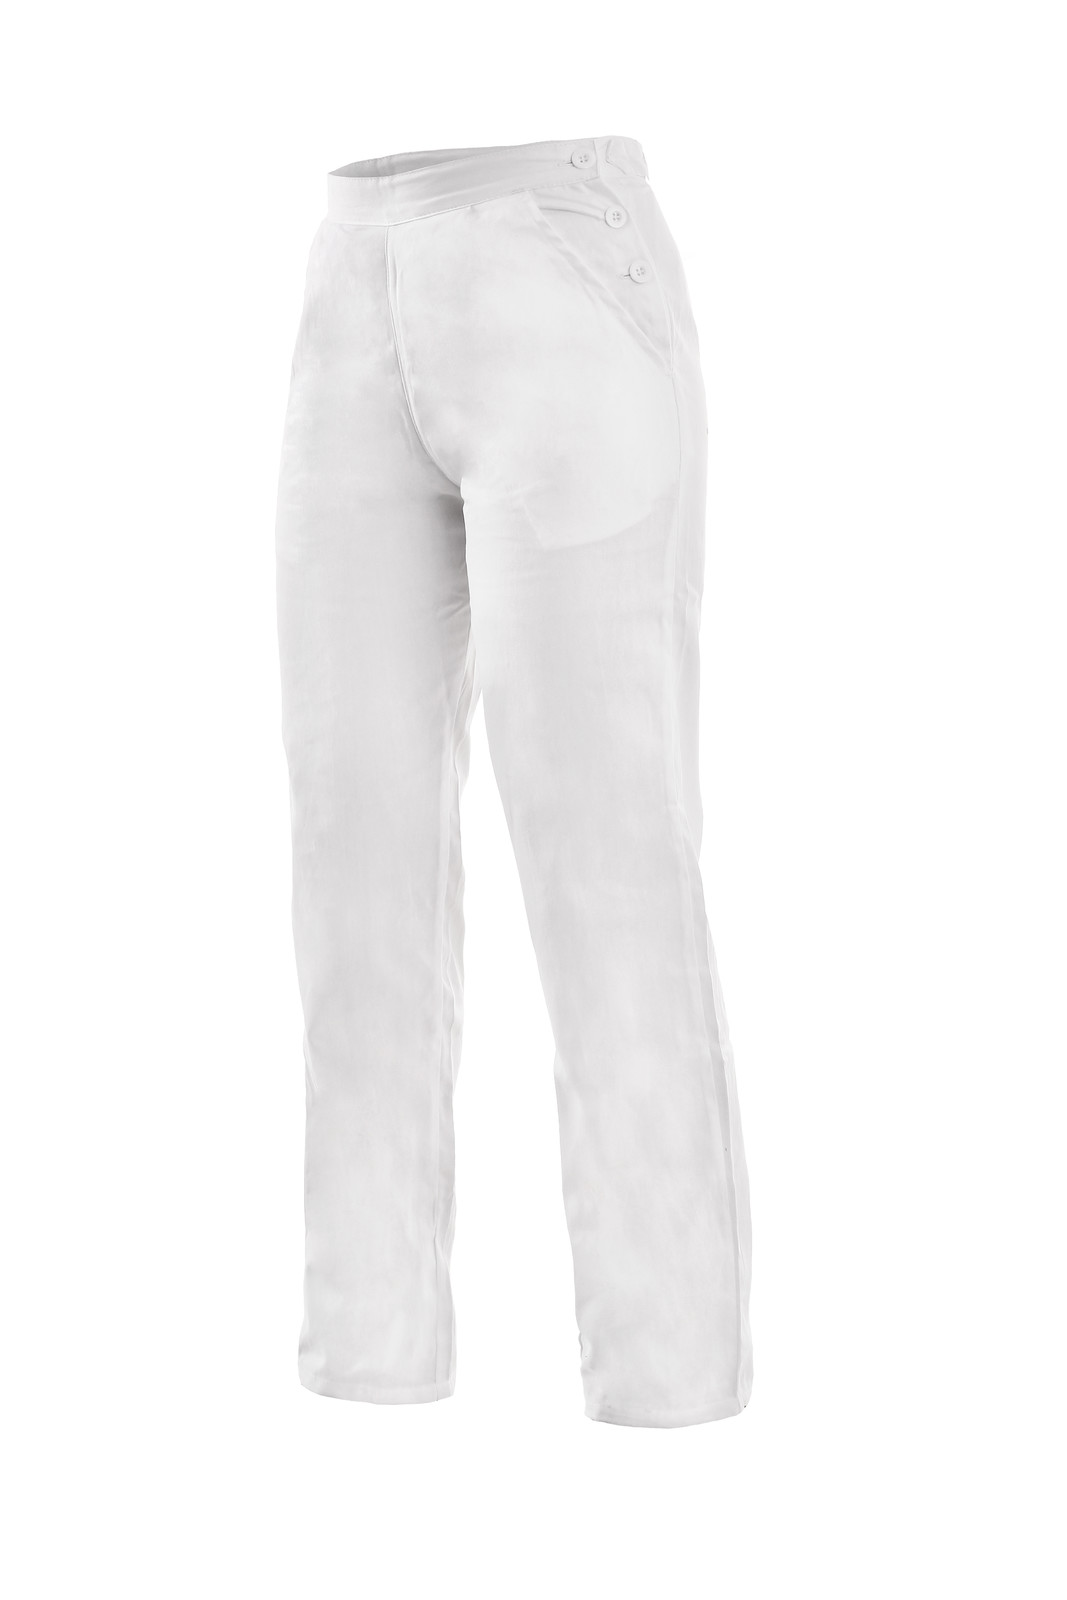 Dámske biele bavlnené nohavice Darja - veľkosť: 54, farba: biela